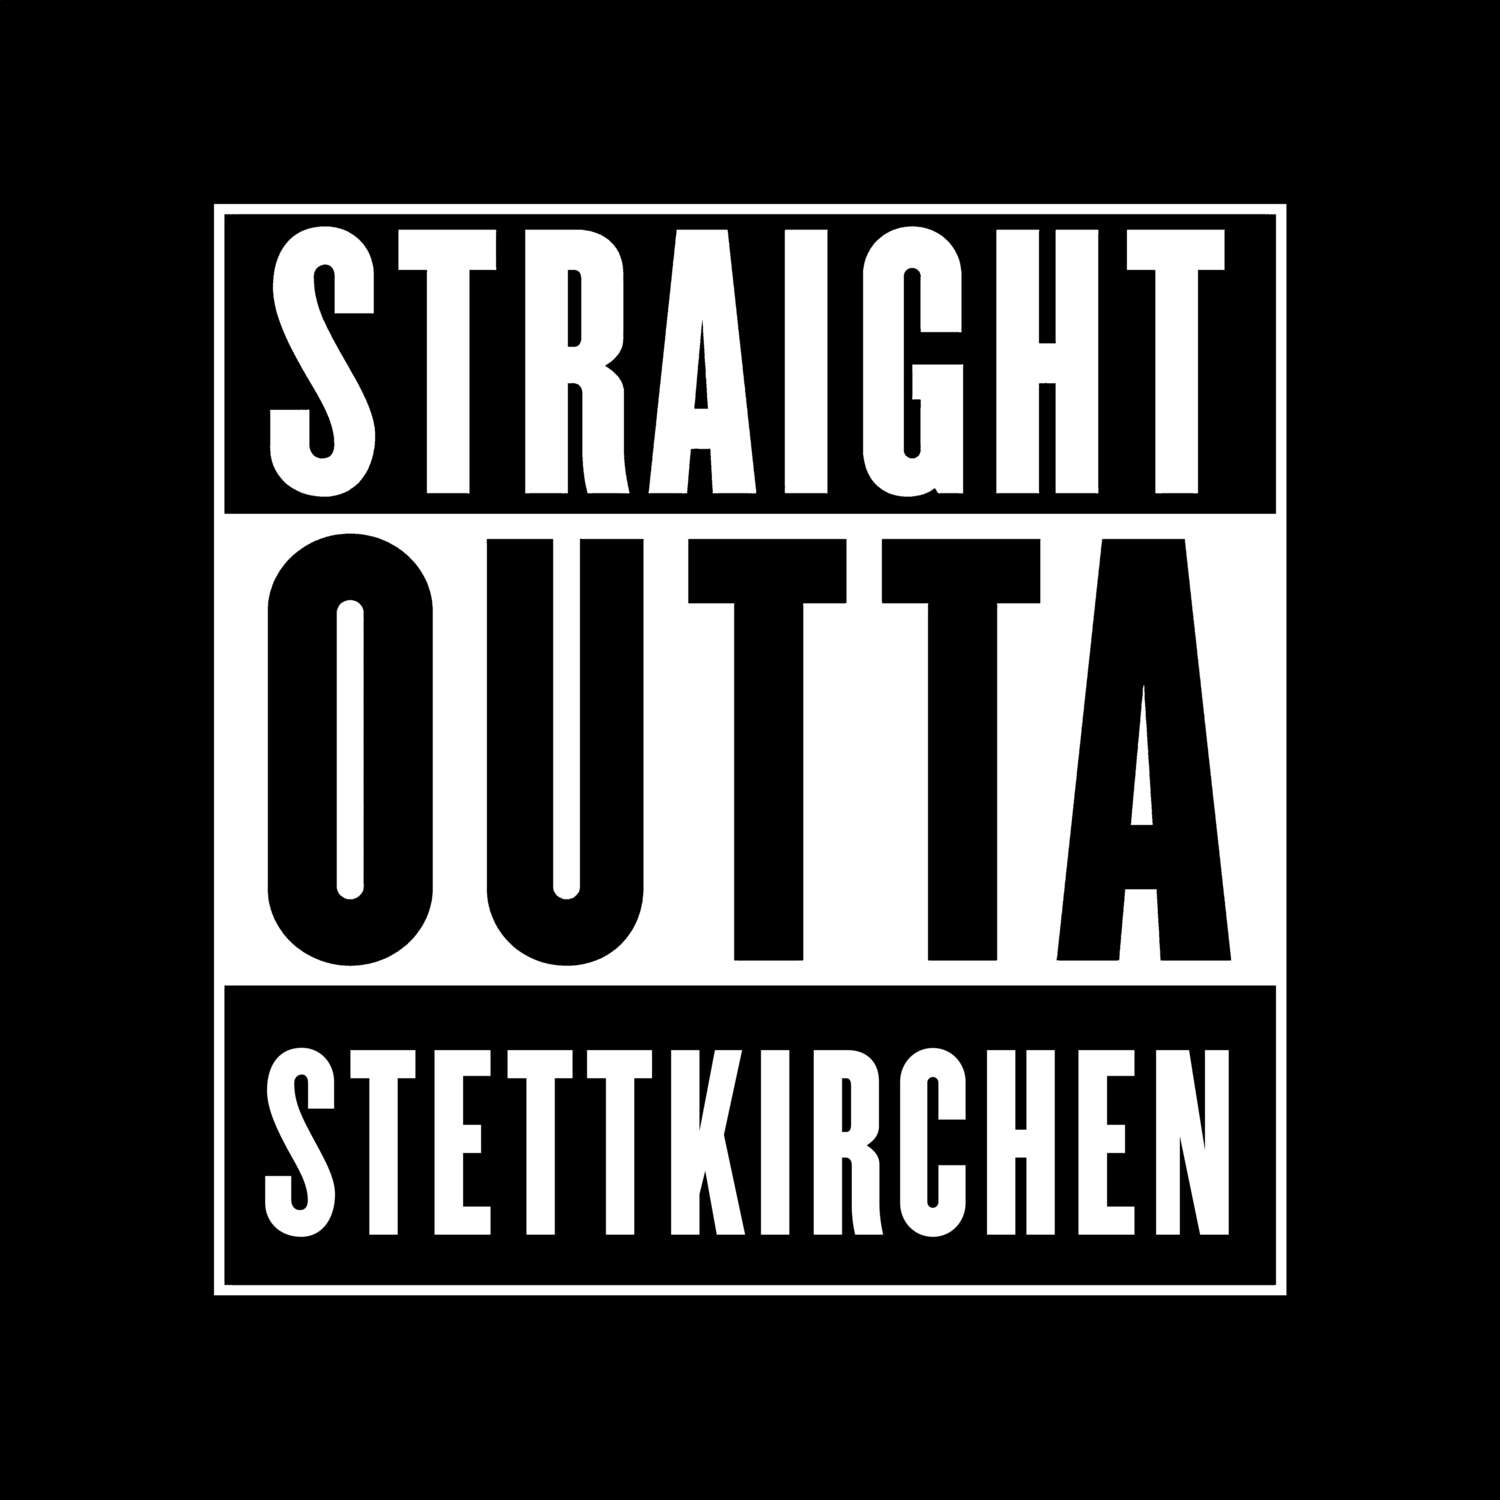 Stettkirchen T-Shirt »Straight Outta«